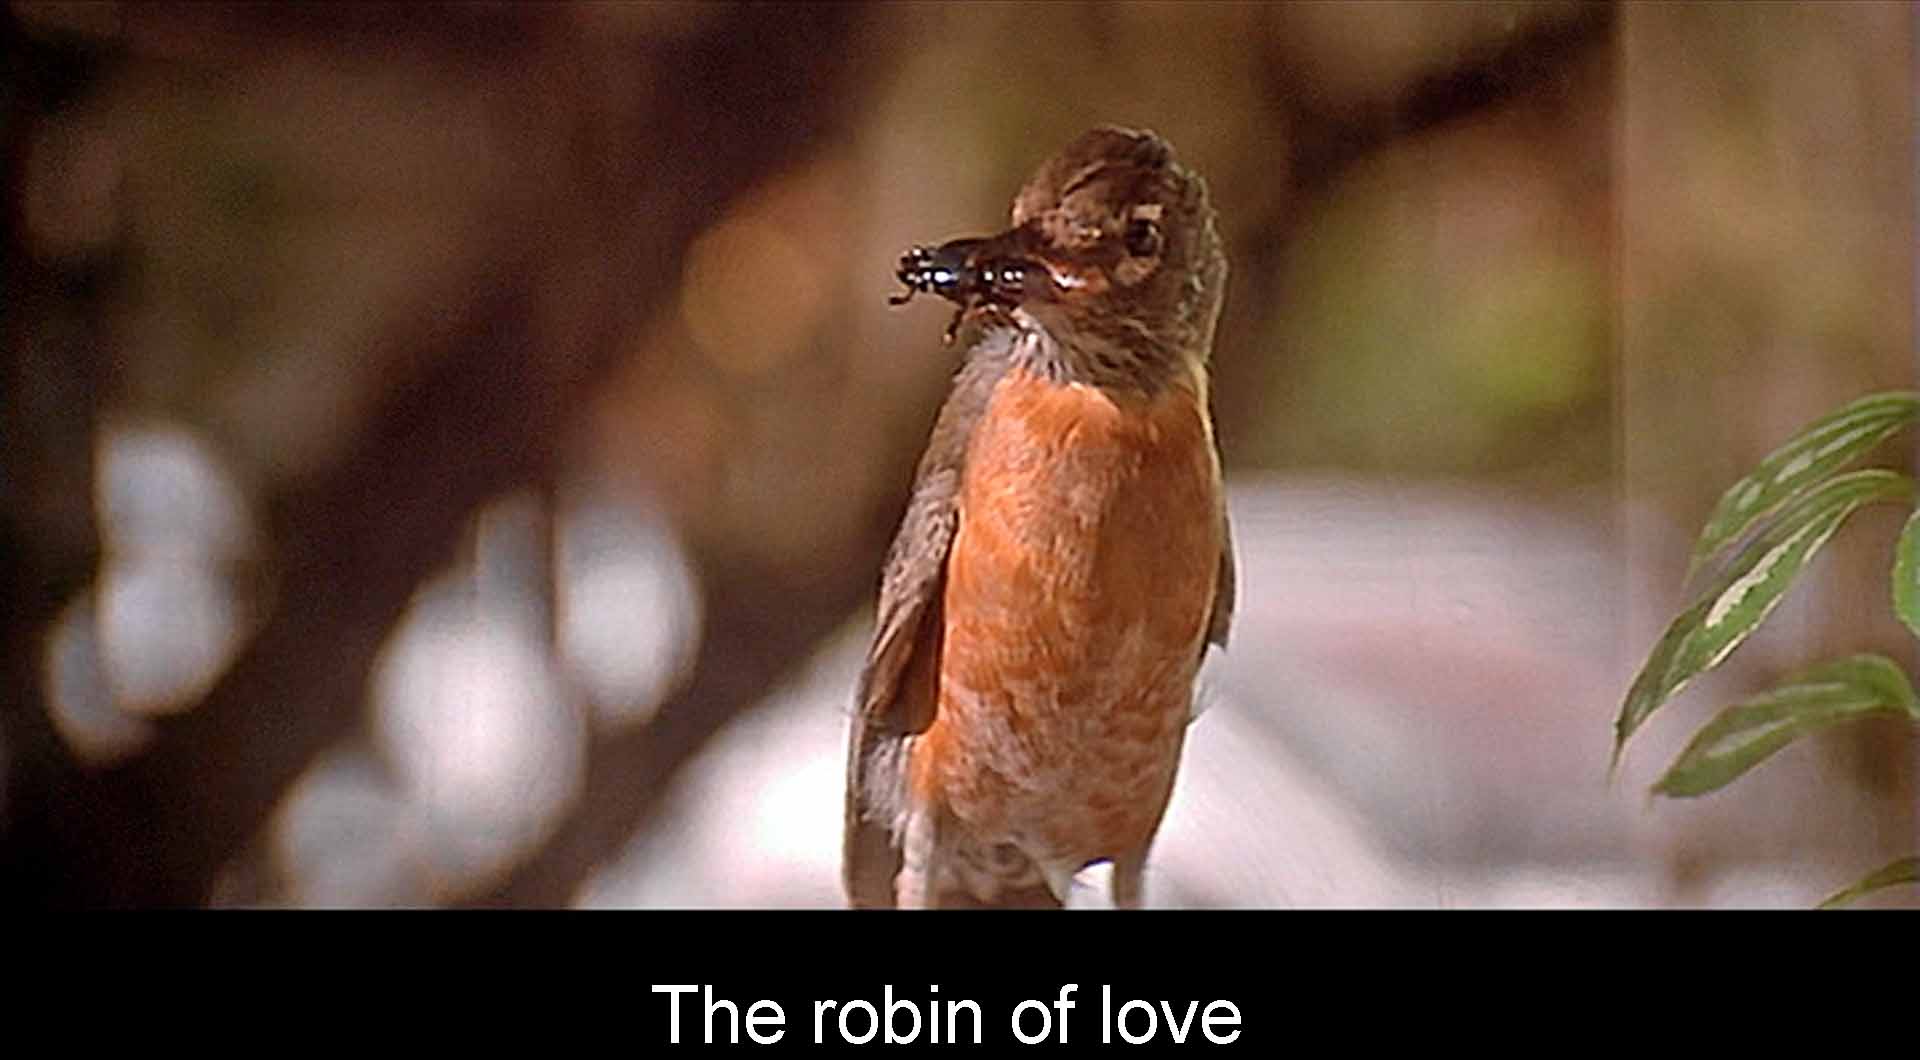 The final robin